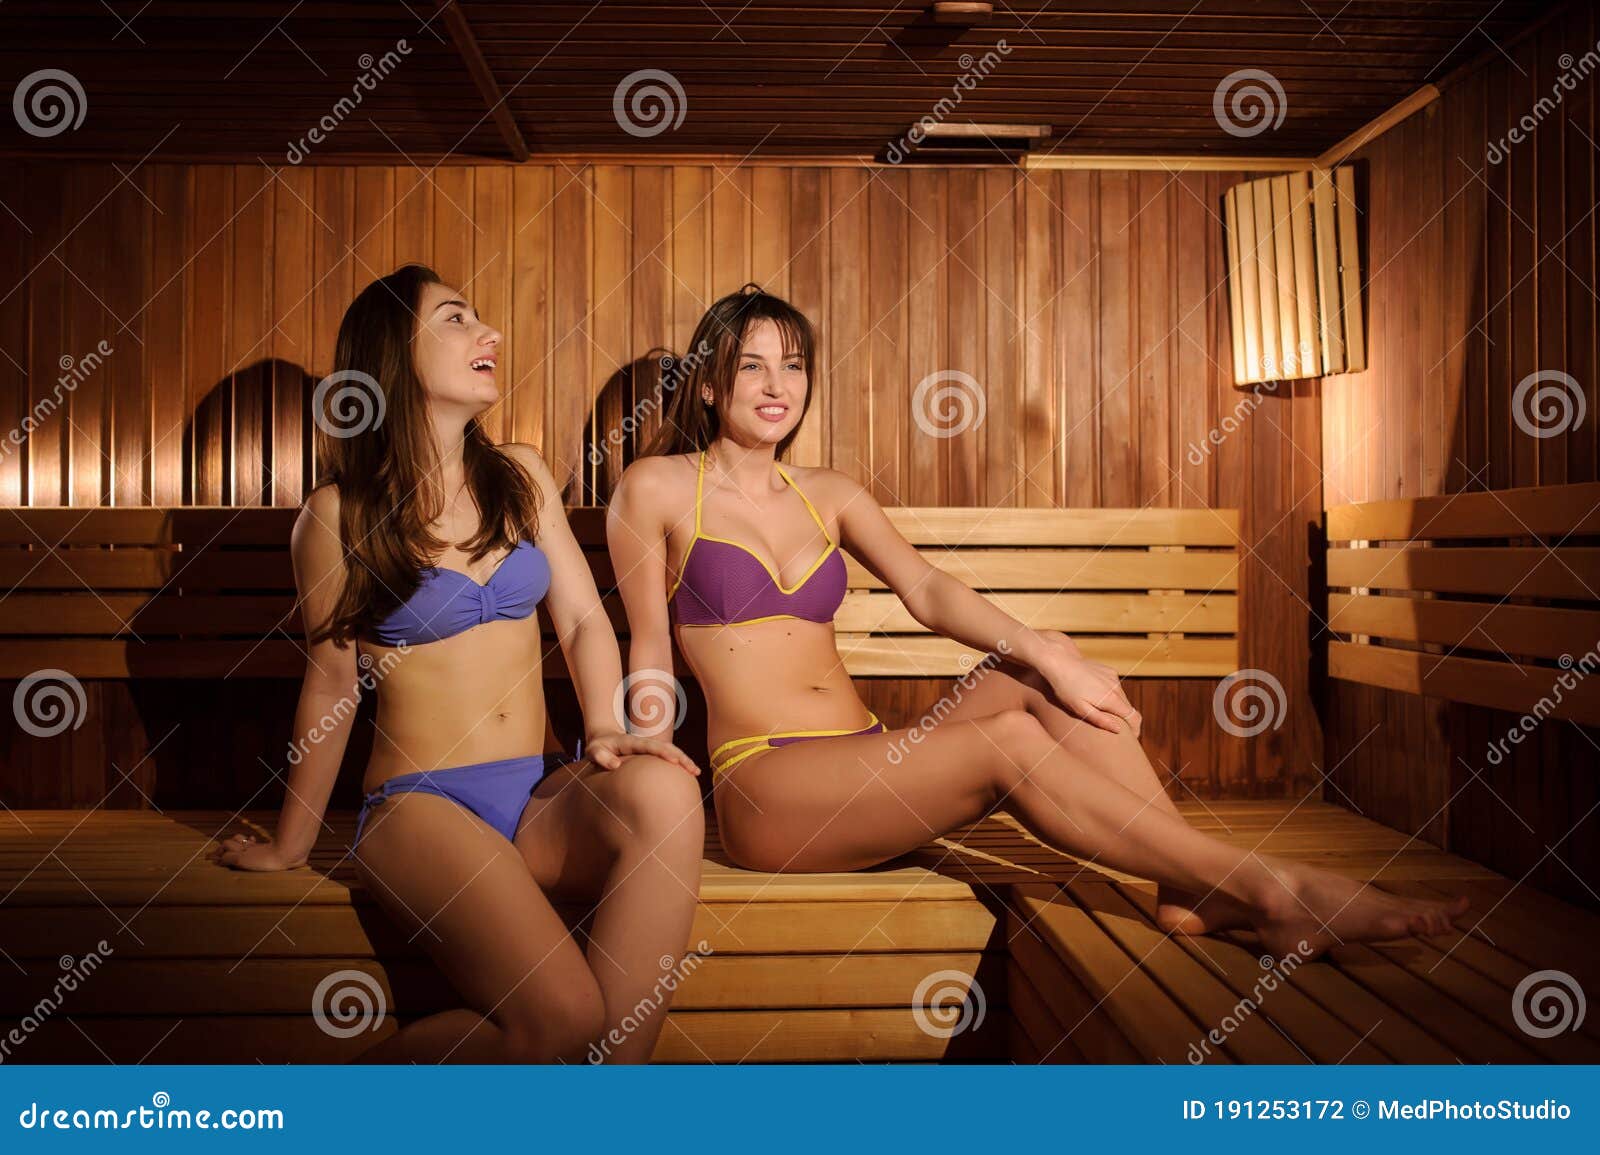 эротика подростки в бане (120) фото